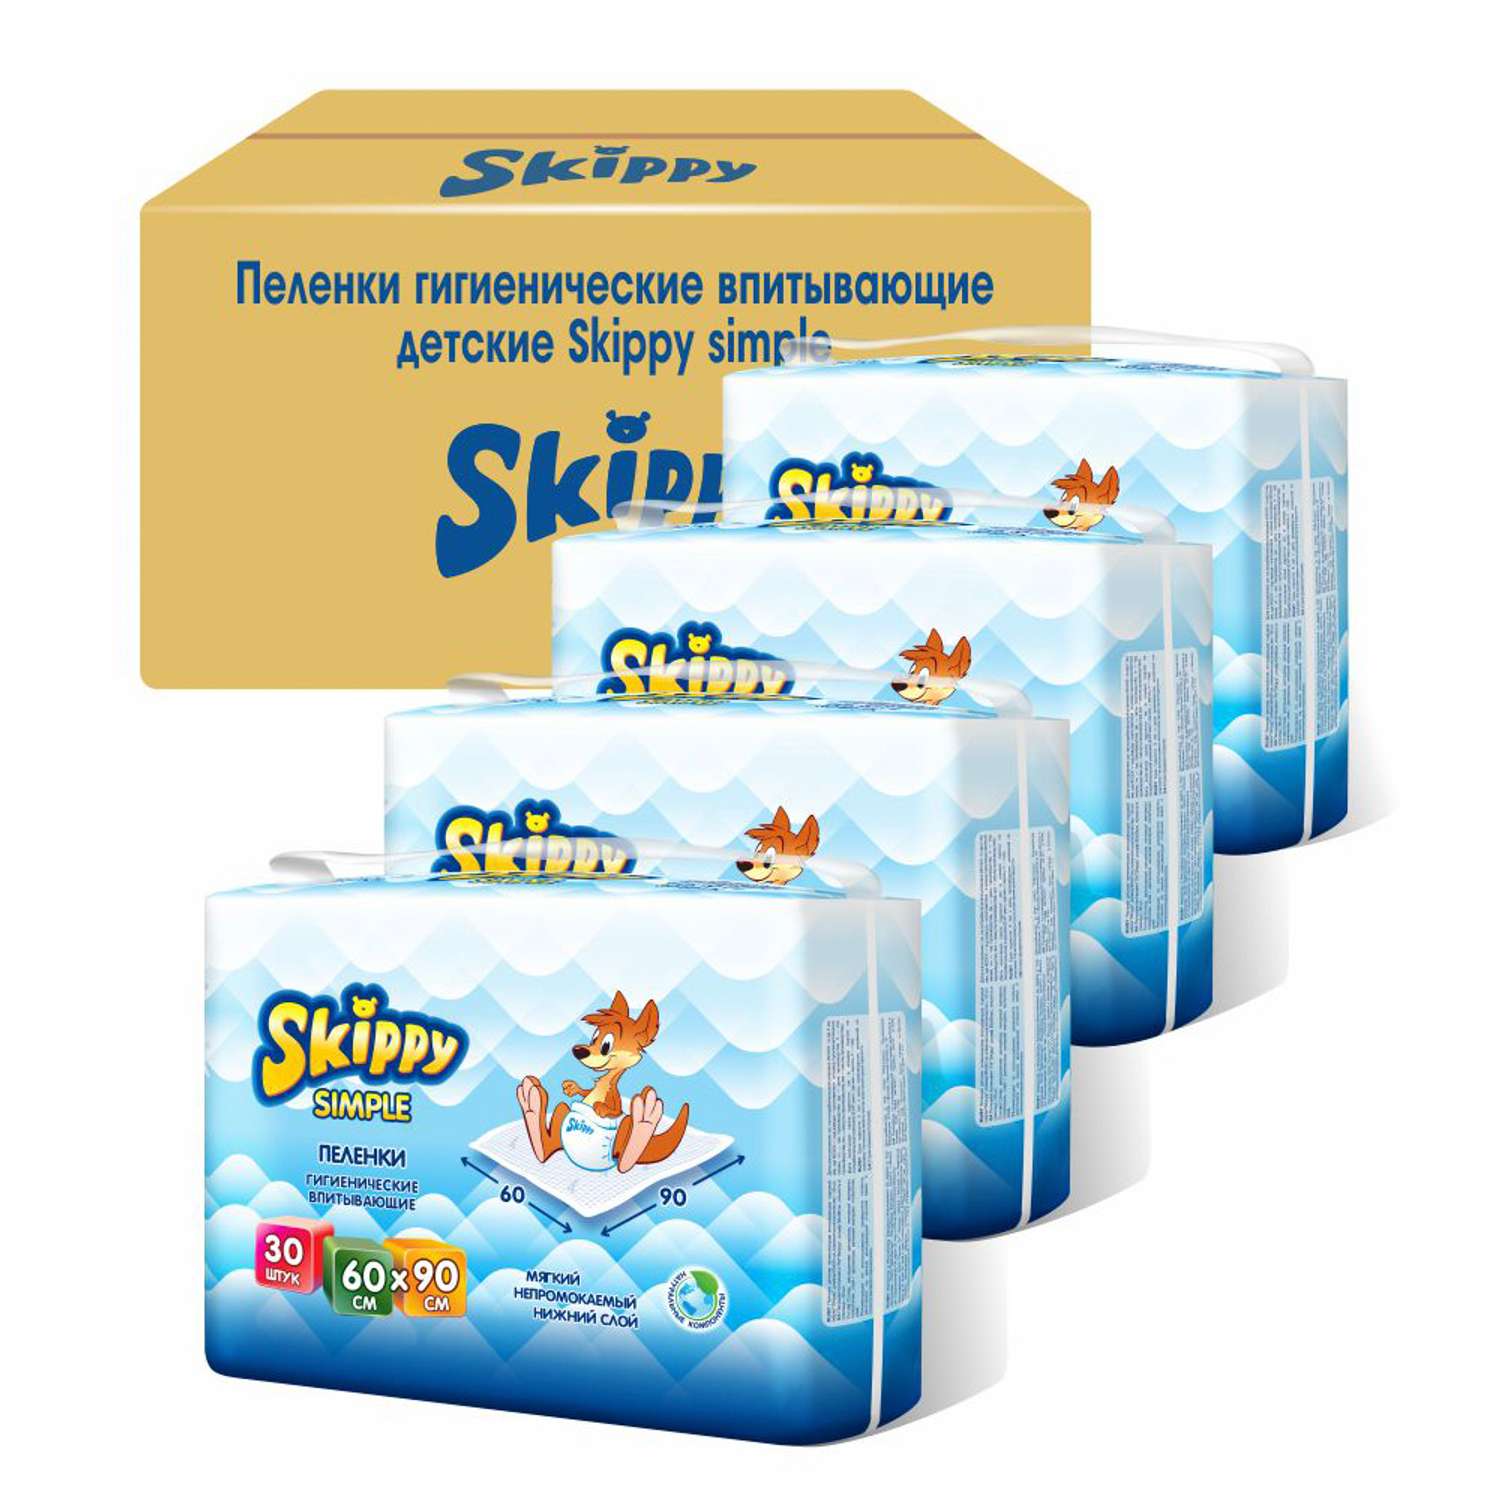 Пеленки детские гигиенические Skippy впитывающие Simple 60x90 см 4 упаковки по 30 шт 8041 - фото 2